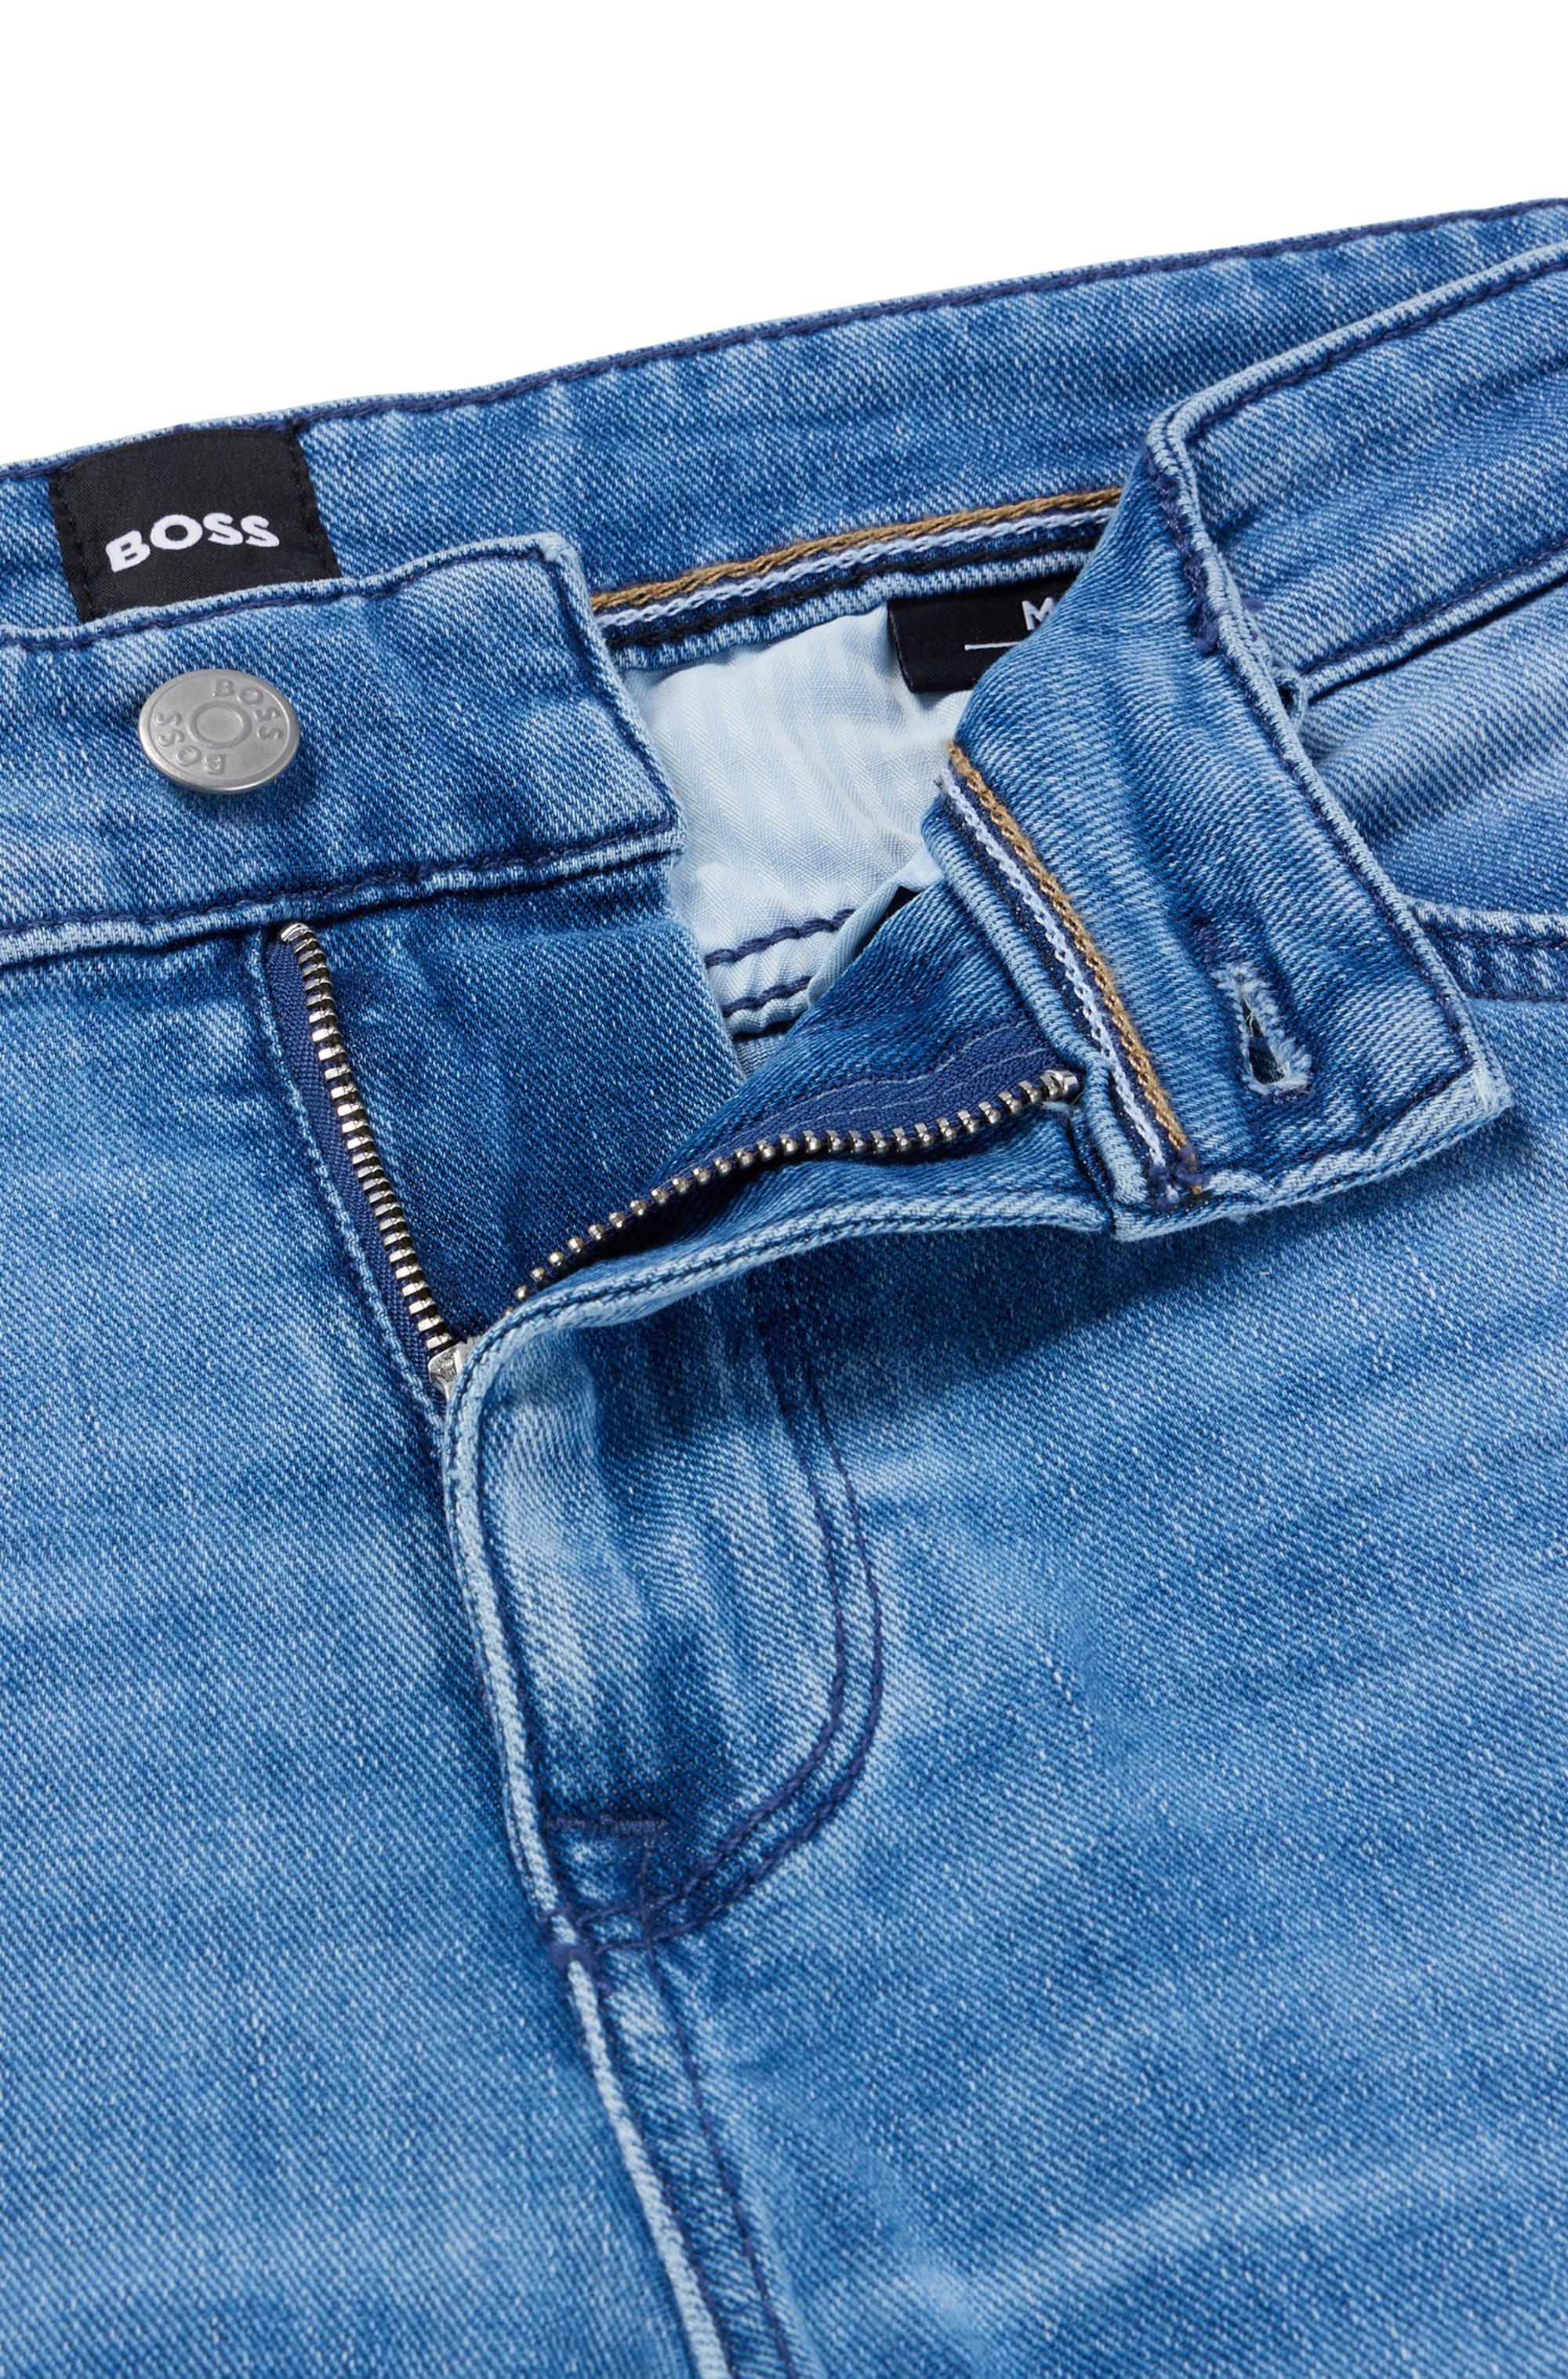 BOSS by BOSS Jeans In Blue Italian Denim Men | Lyst